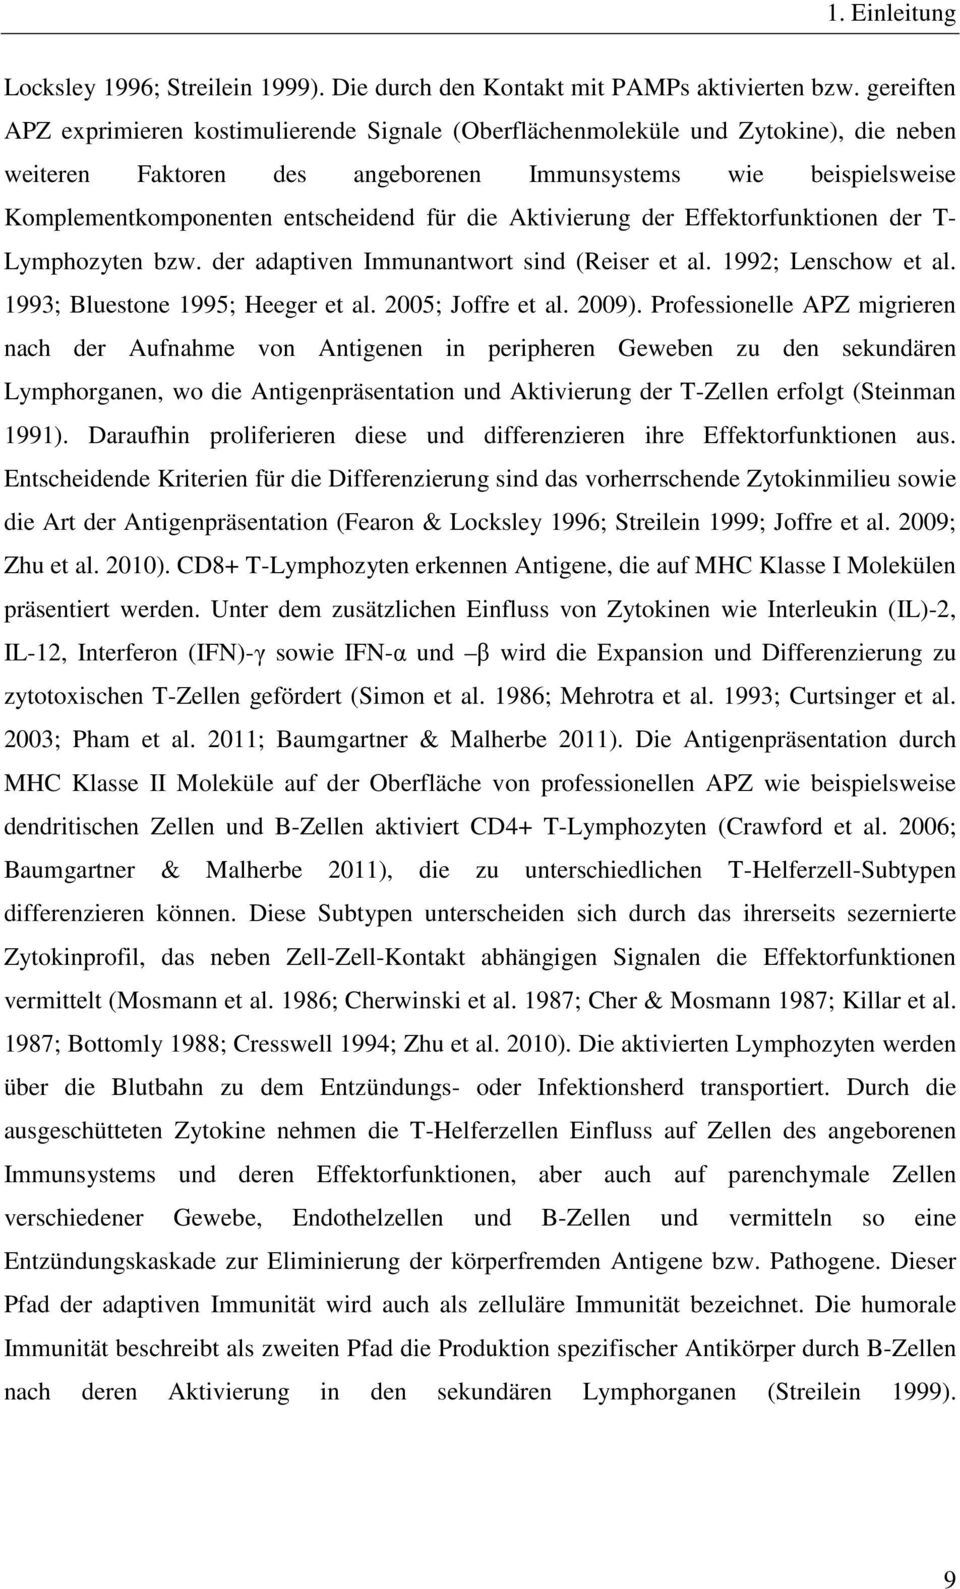 für die Aktivierung der Effektorfunktionen der T- Lymphozyten bzw. der adaptiven Immunantwort sind (Reiser et al. 1992; Lenschow et al. 1993; Bluestone 1995; Heeger et al. 2005; Joffre et al. 2009).